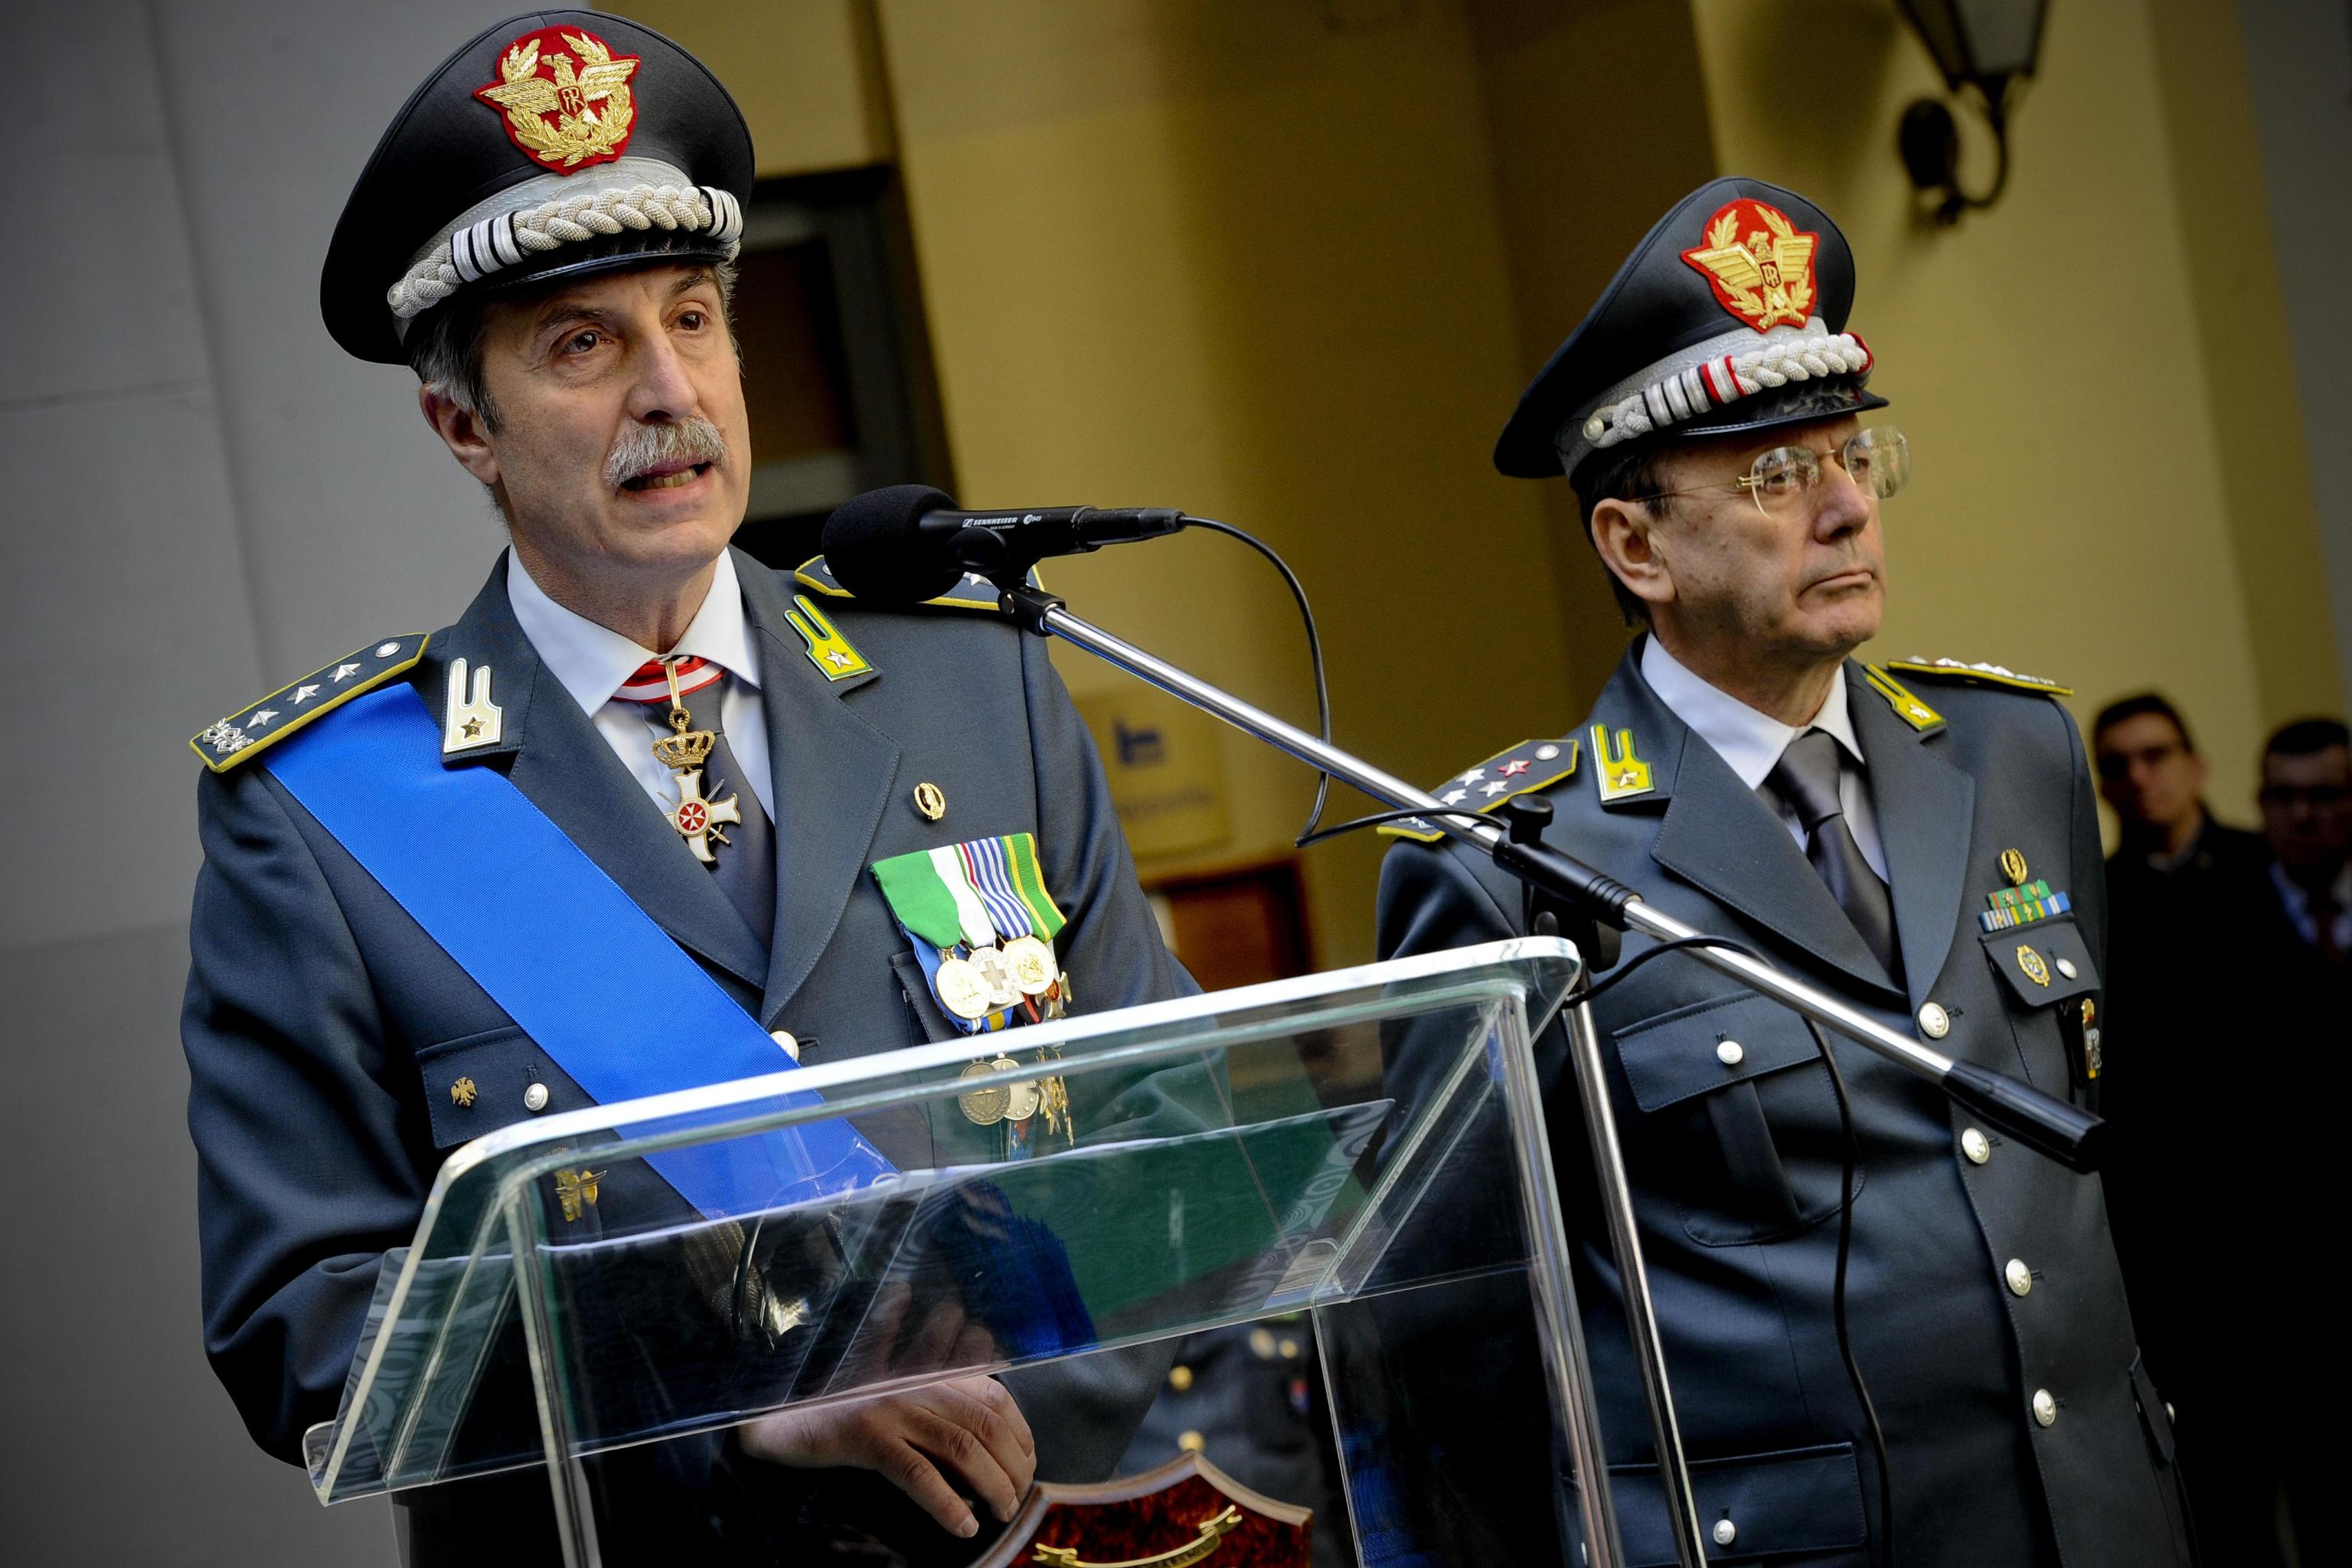 Il generale Vito Bardi sarà il candidato del centrodestra alle prossime elezioni regionali in Basilicata